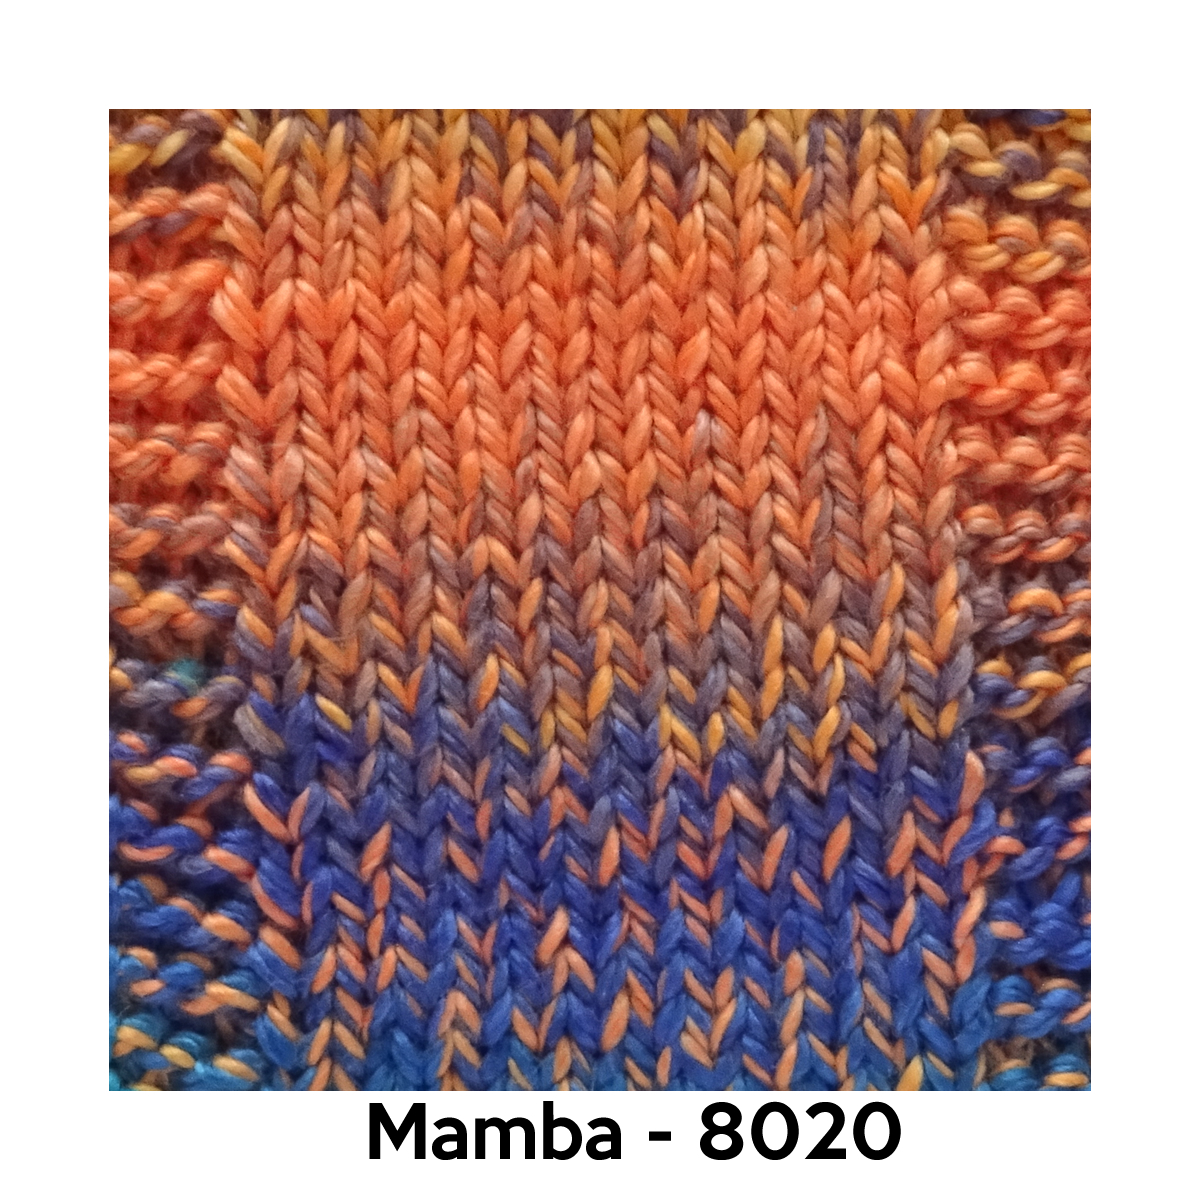 Mamba - 8020